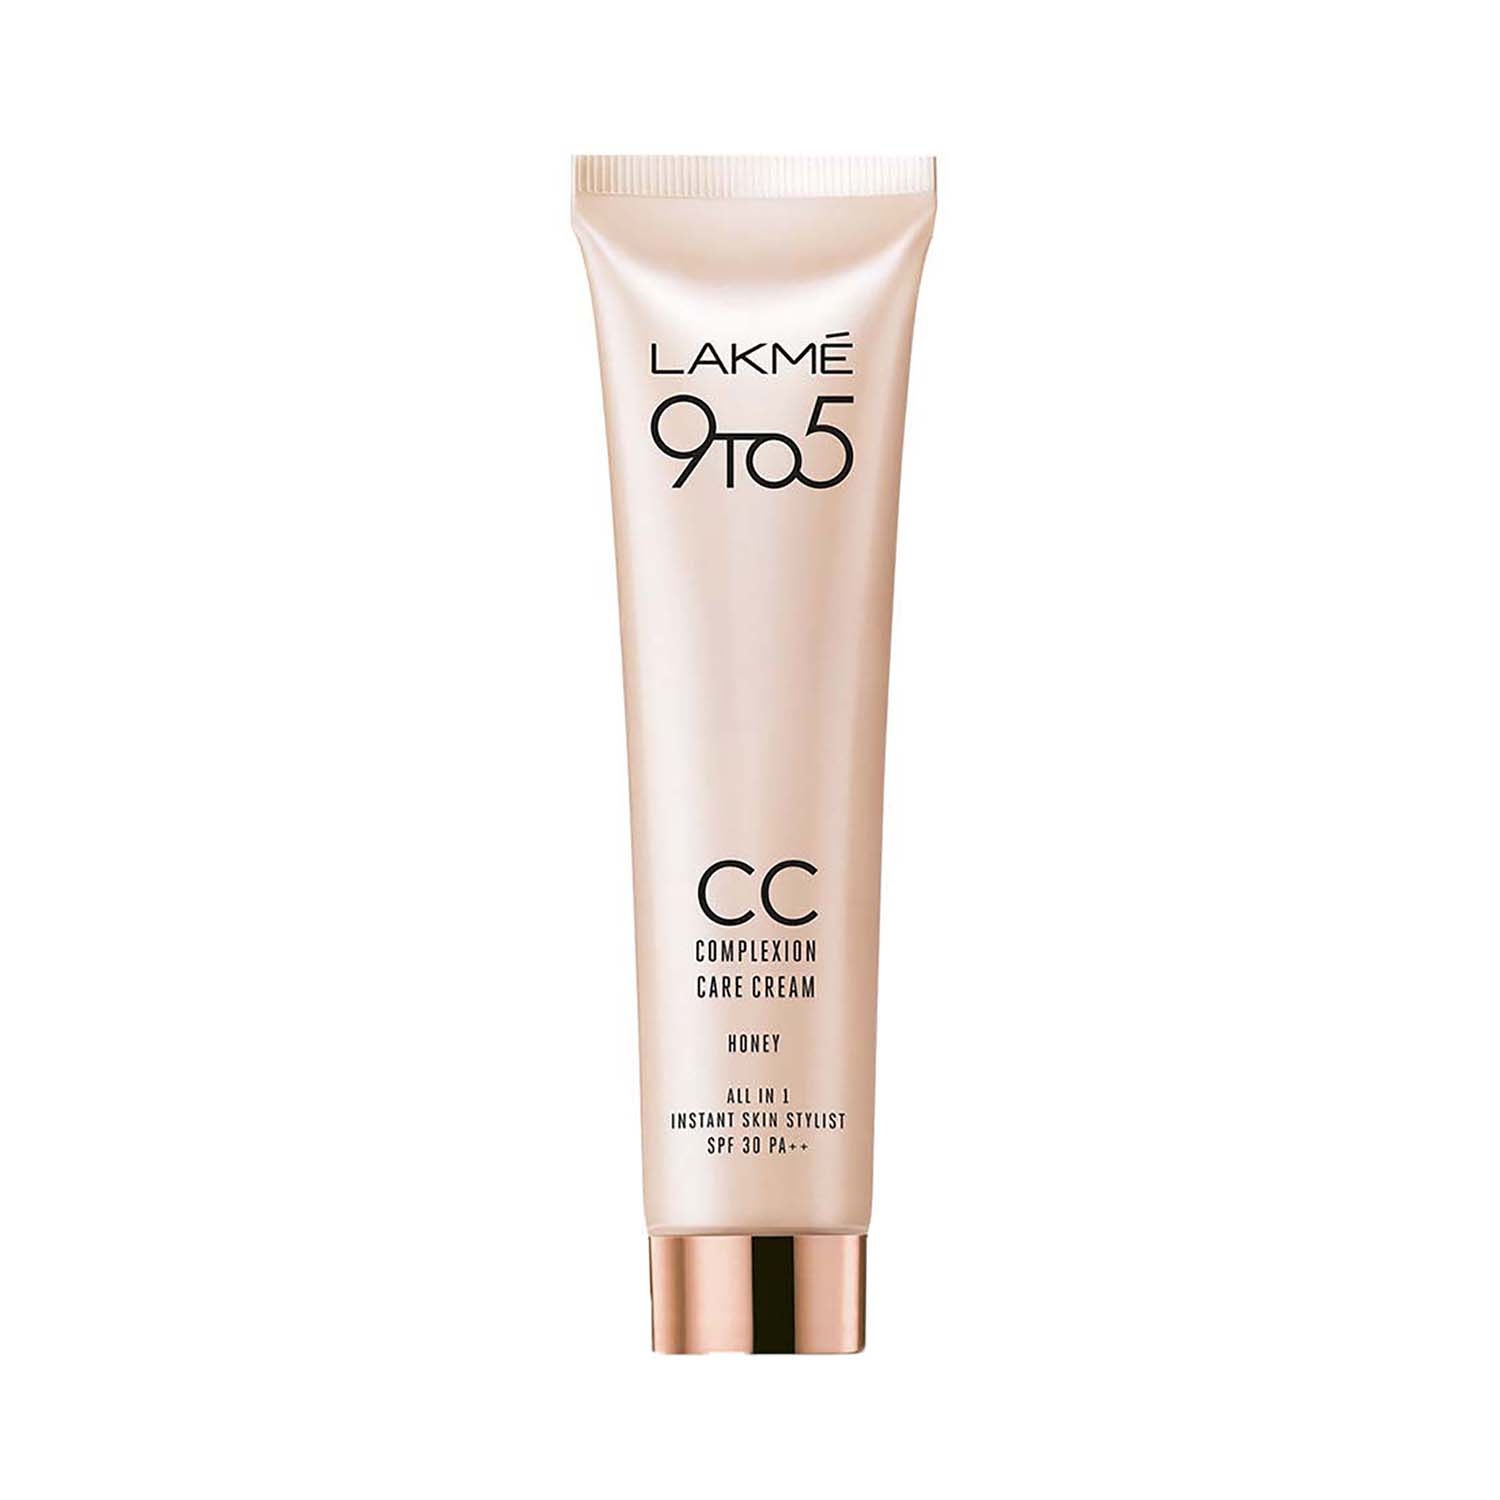 Lakme | Lakme 9 To 5 CC Complexion Care Cream - Honey (30g)